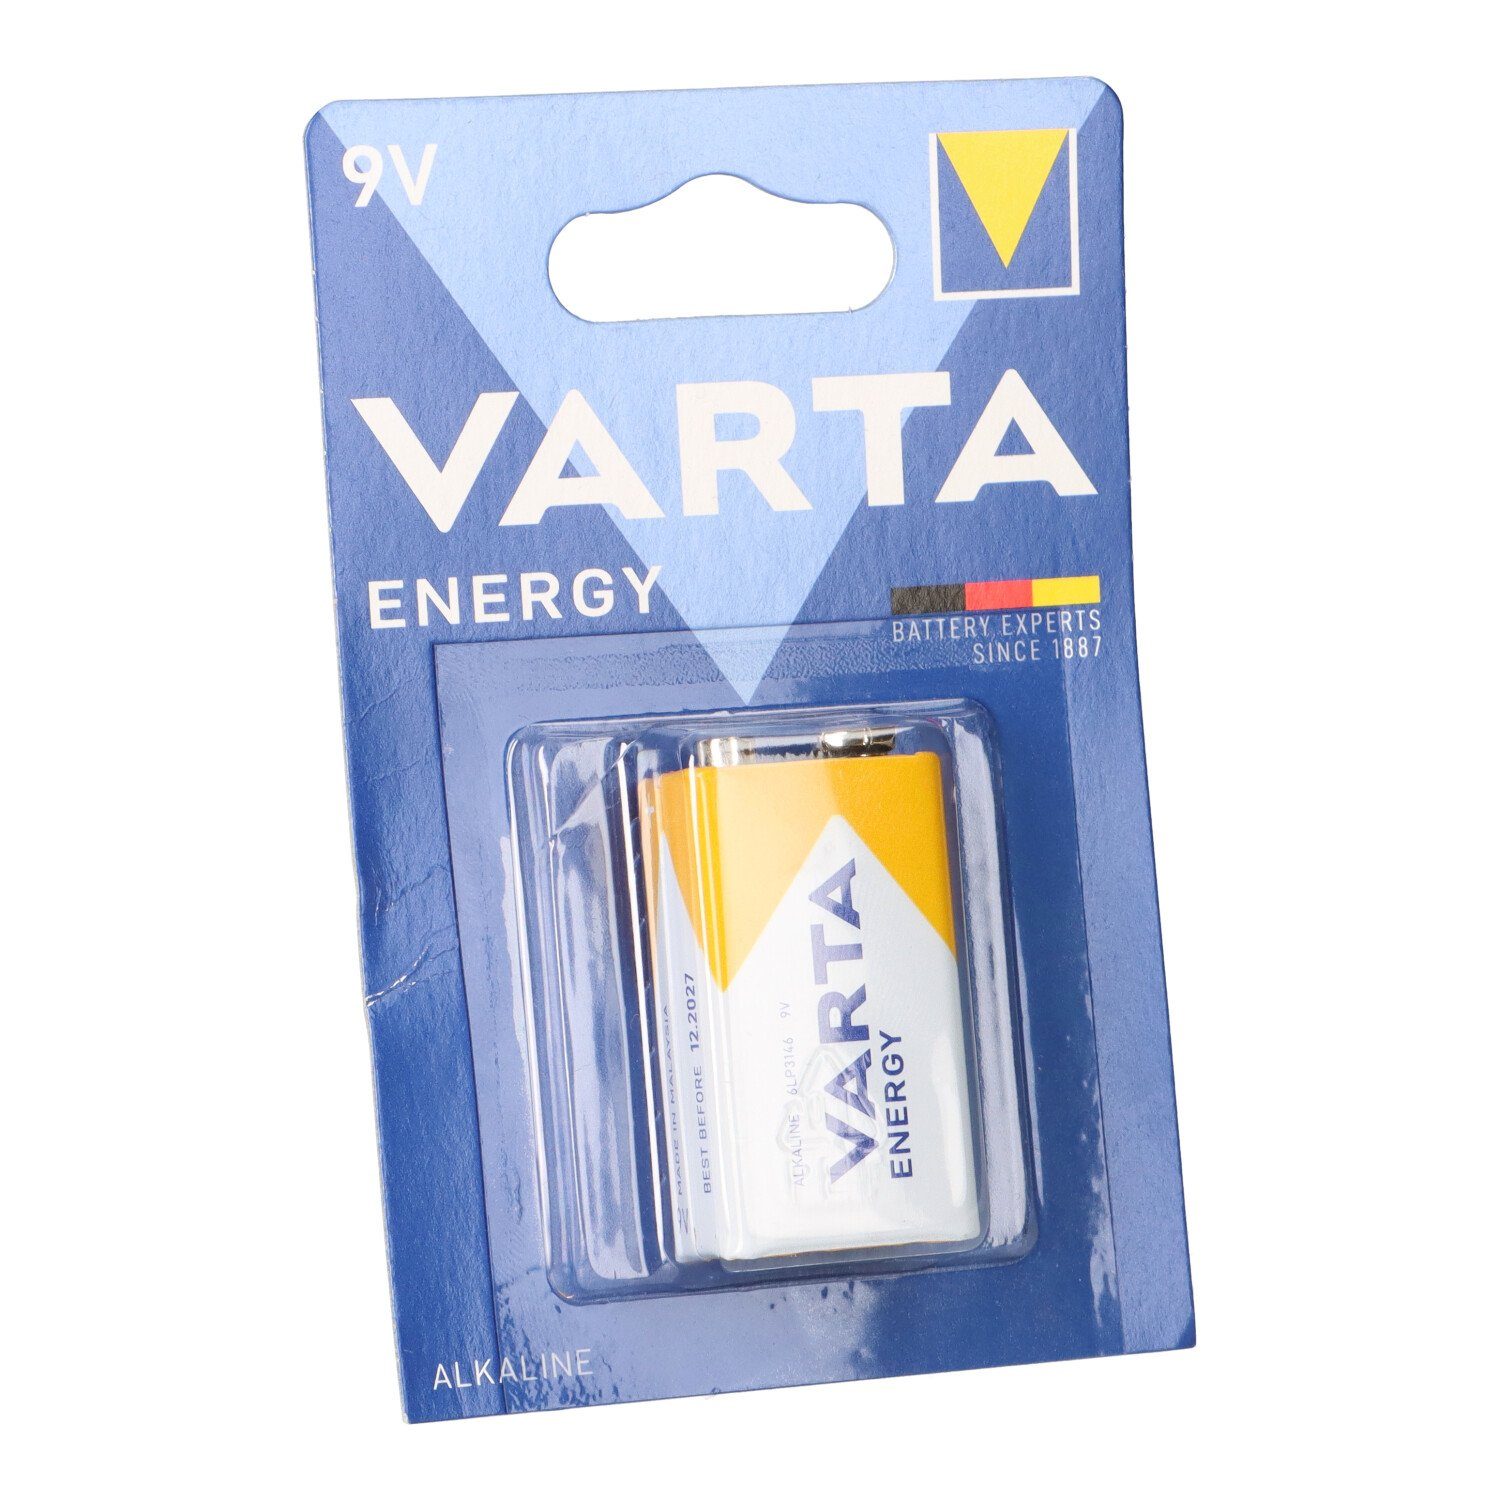 VARTA Varta Energy 9V-Block Batterie 1er Blister AlMn 565mAh Batterie